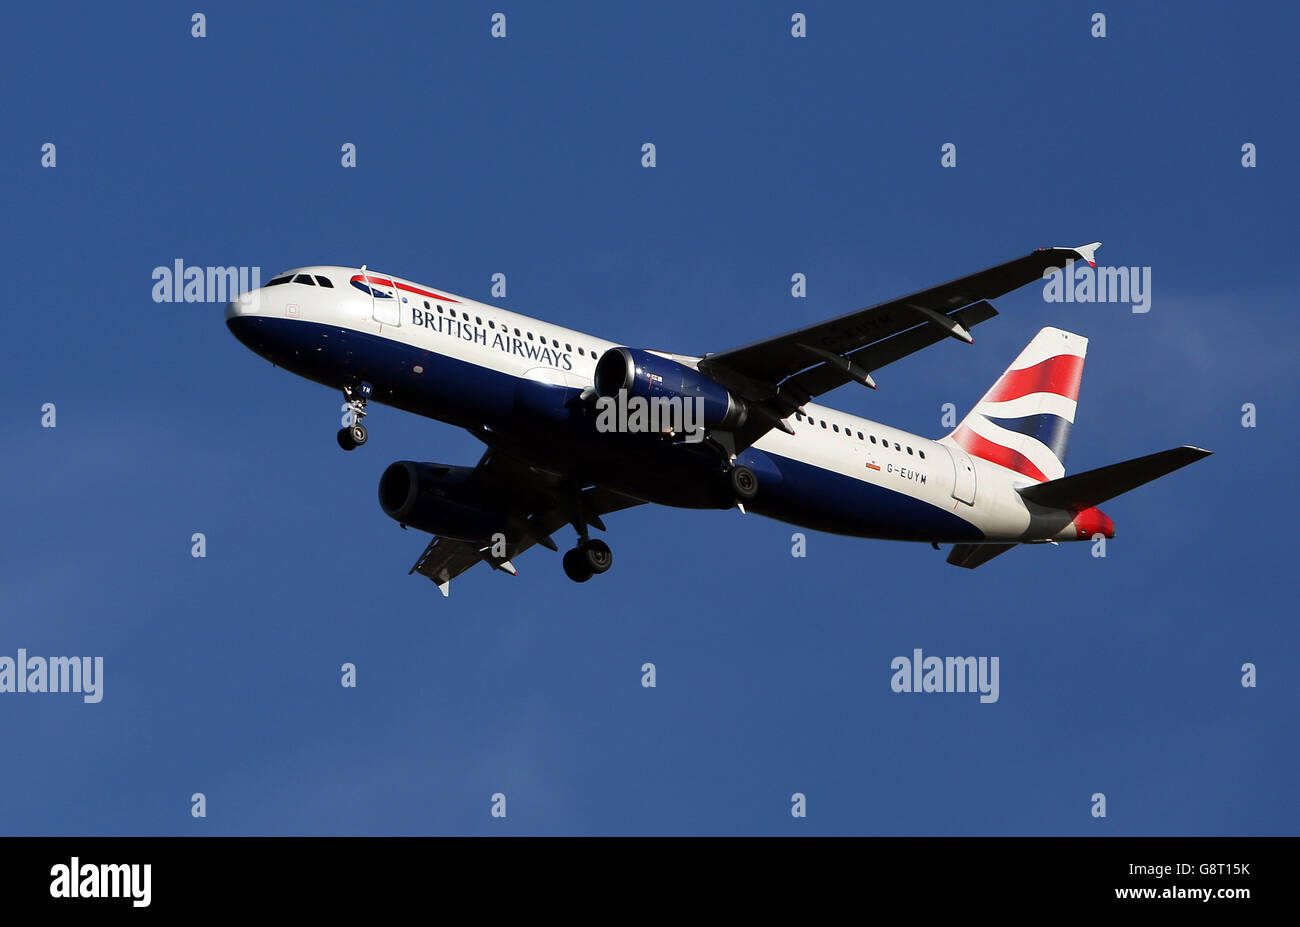 Avion stock - aéroport de Heathrow.Un avion Airbus A320-232 de British Airways immatriculé G-EUYM atterrit à Heathrow Banque D'Images